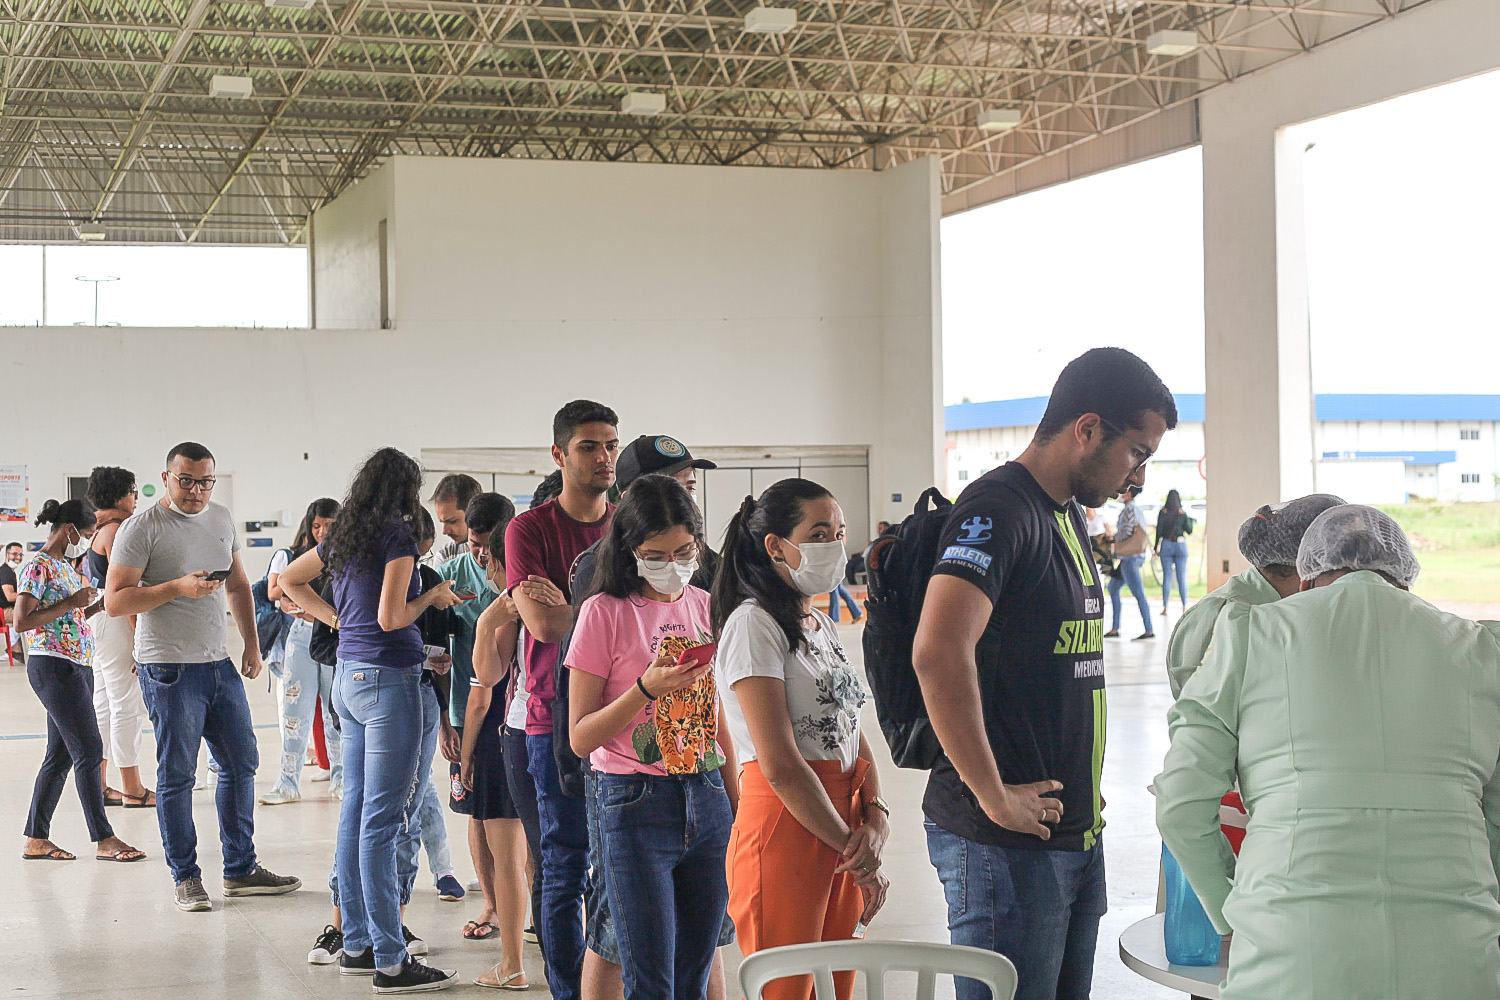 Campanha abrangeu comunidades acadêmica e externa. Imagens: Ana Laura Farias/ Campus Lagarto 